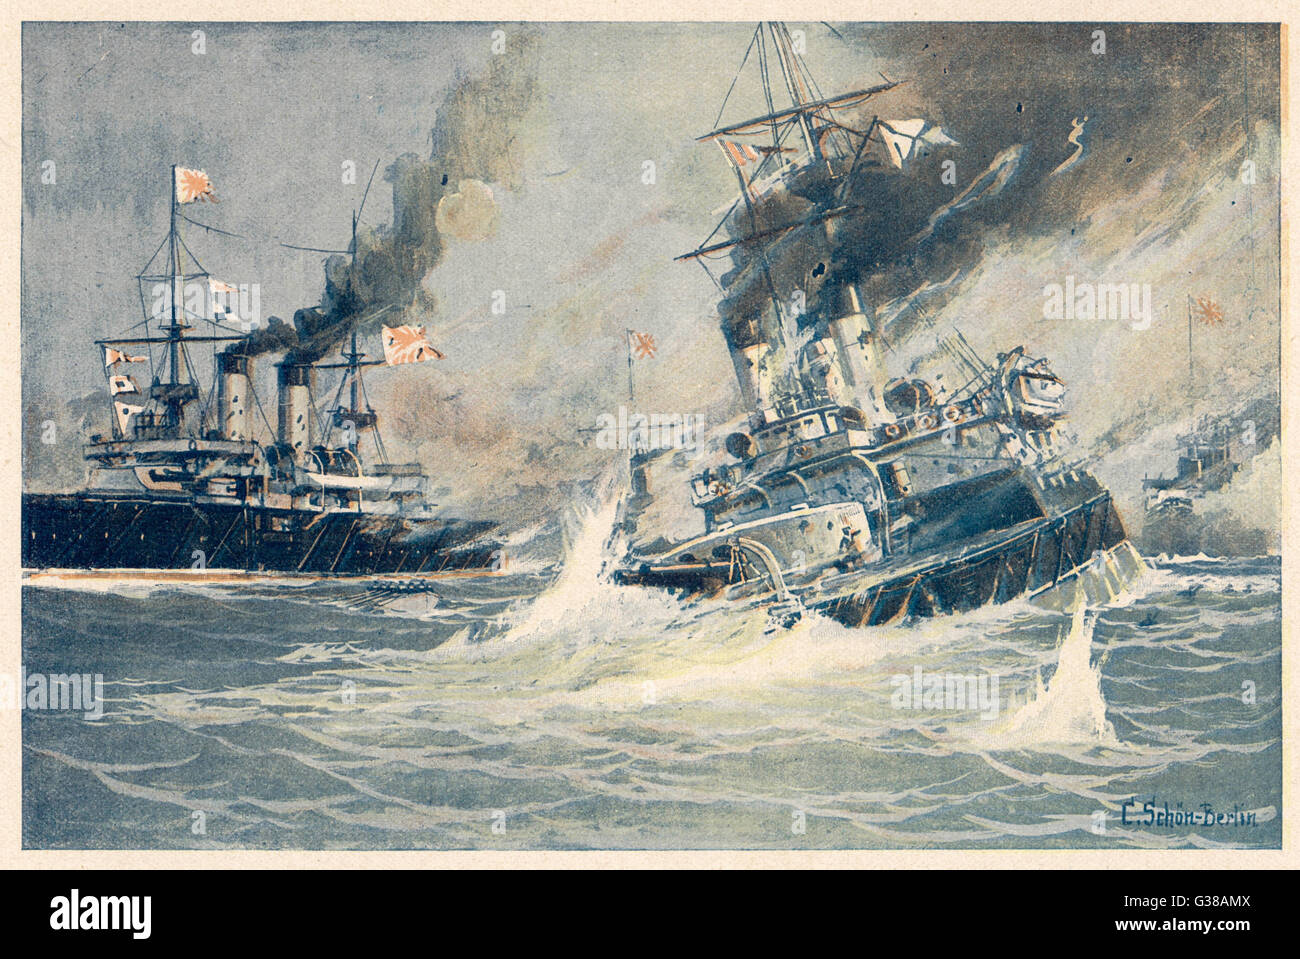 Battaglia di Tsushima stretto l'affondamento della corazzata russa "Navarin" - quasi tutta la flotta russa è stata distrutta o catturata dai giapponesi in 2 giorni di battaglia data: 27-28 Maggio 1905 Foto Stock